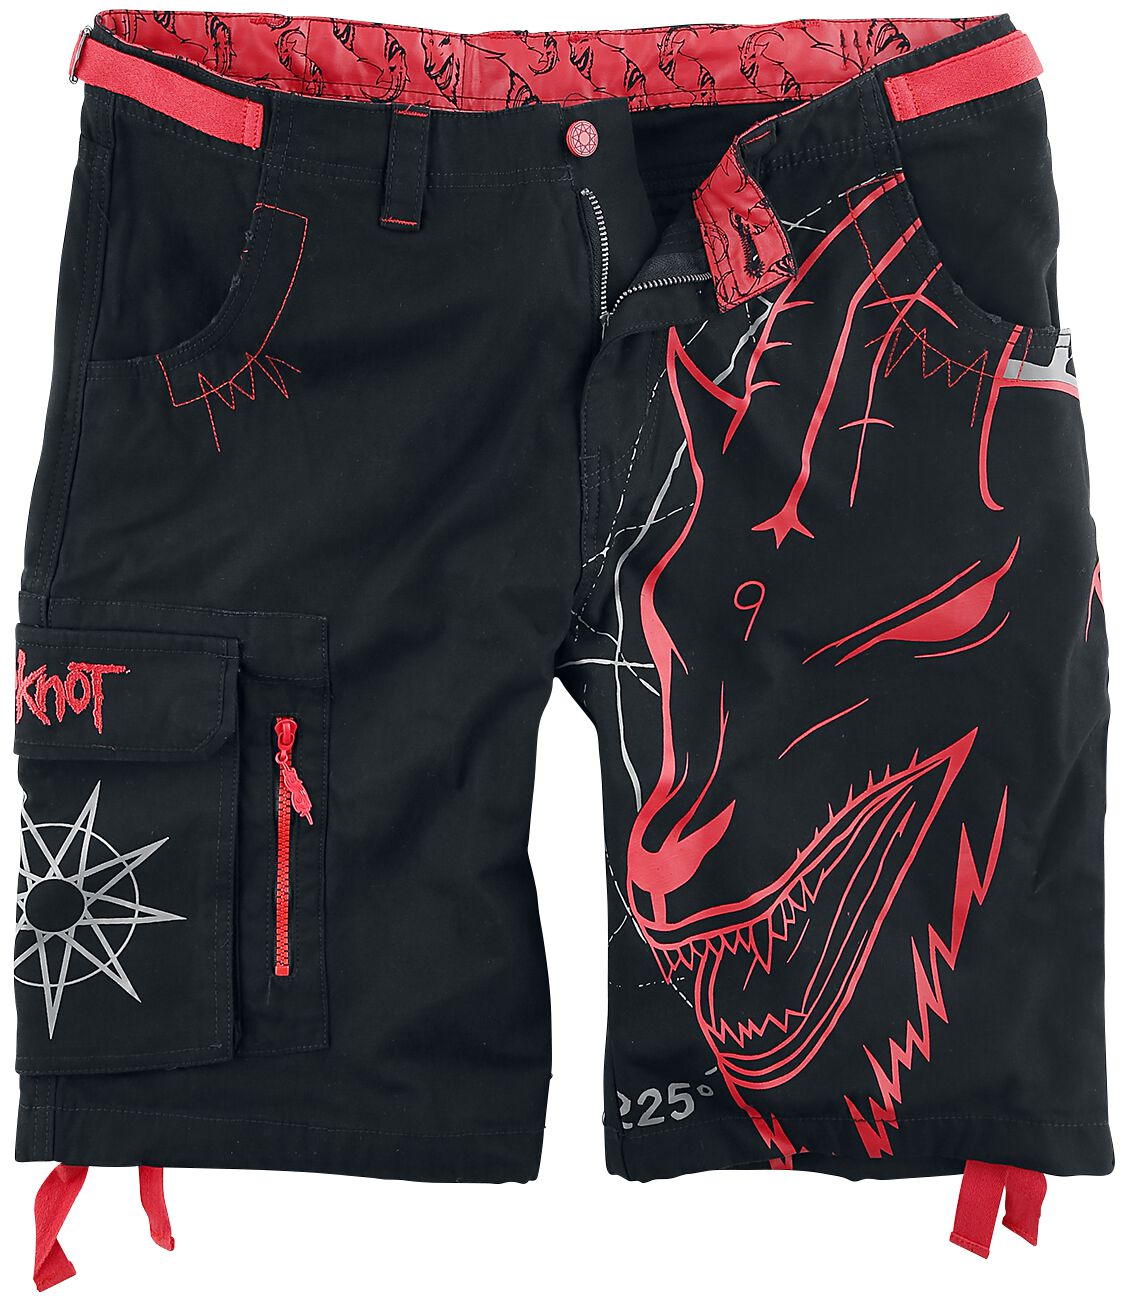 Short de Slipknot - EMP Signature Collection - S à 5XL - pour Homme - noir/rouge